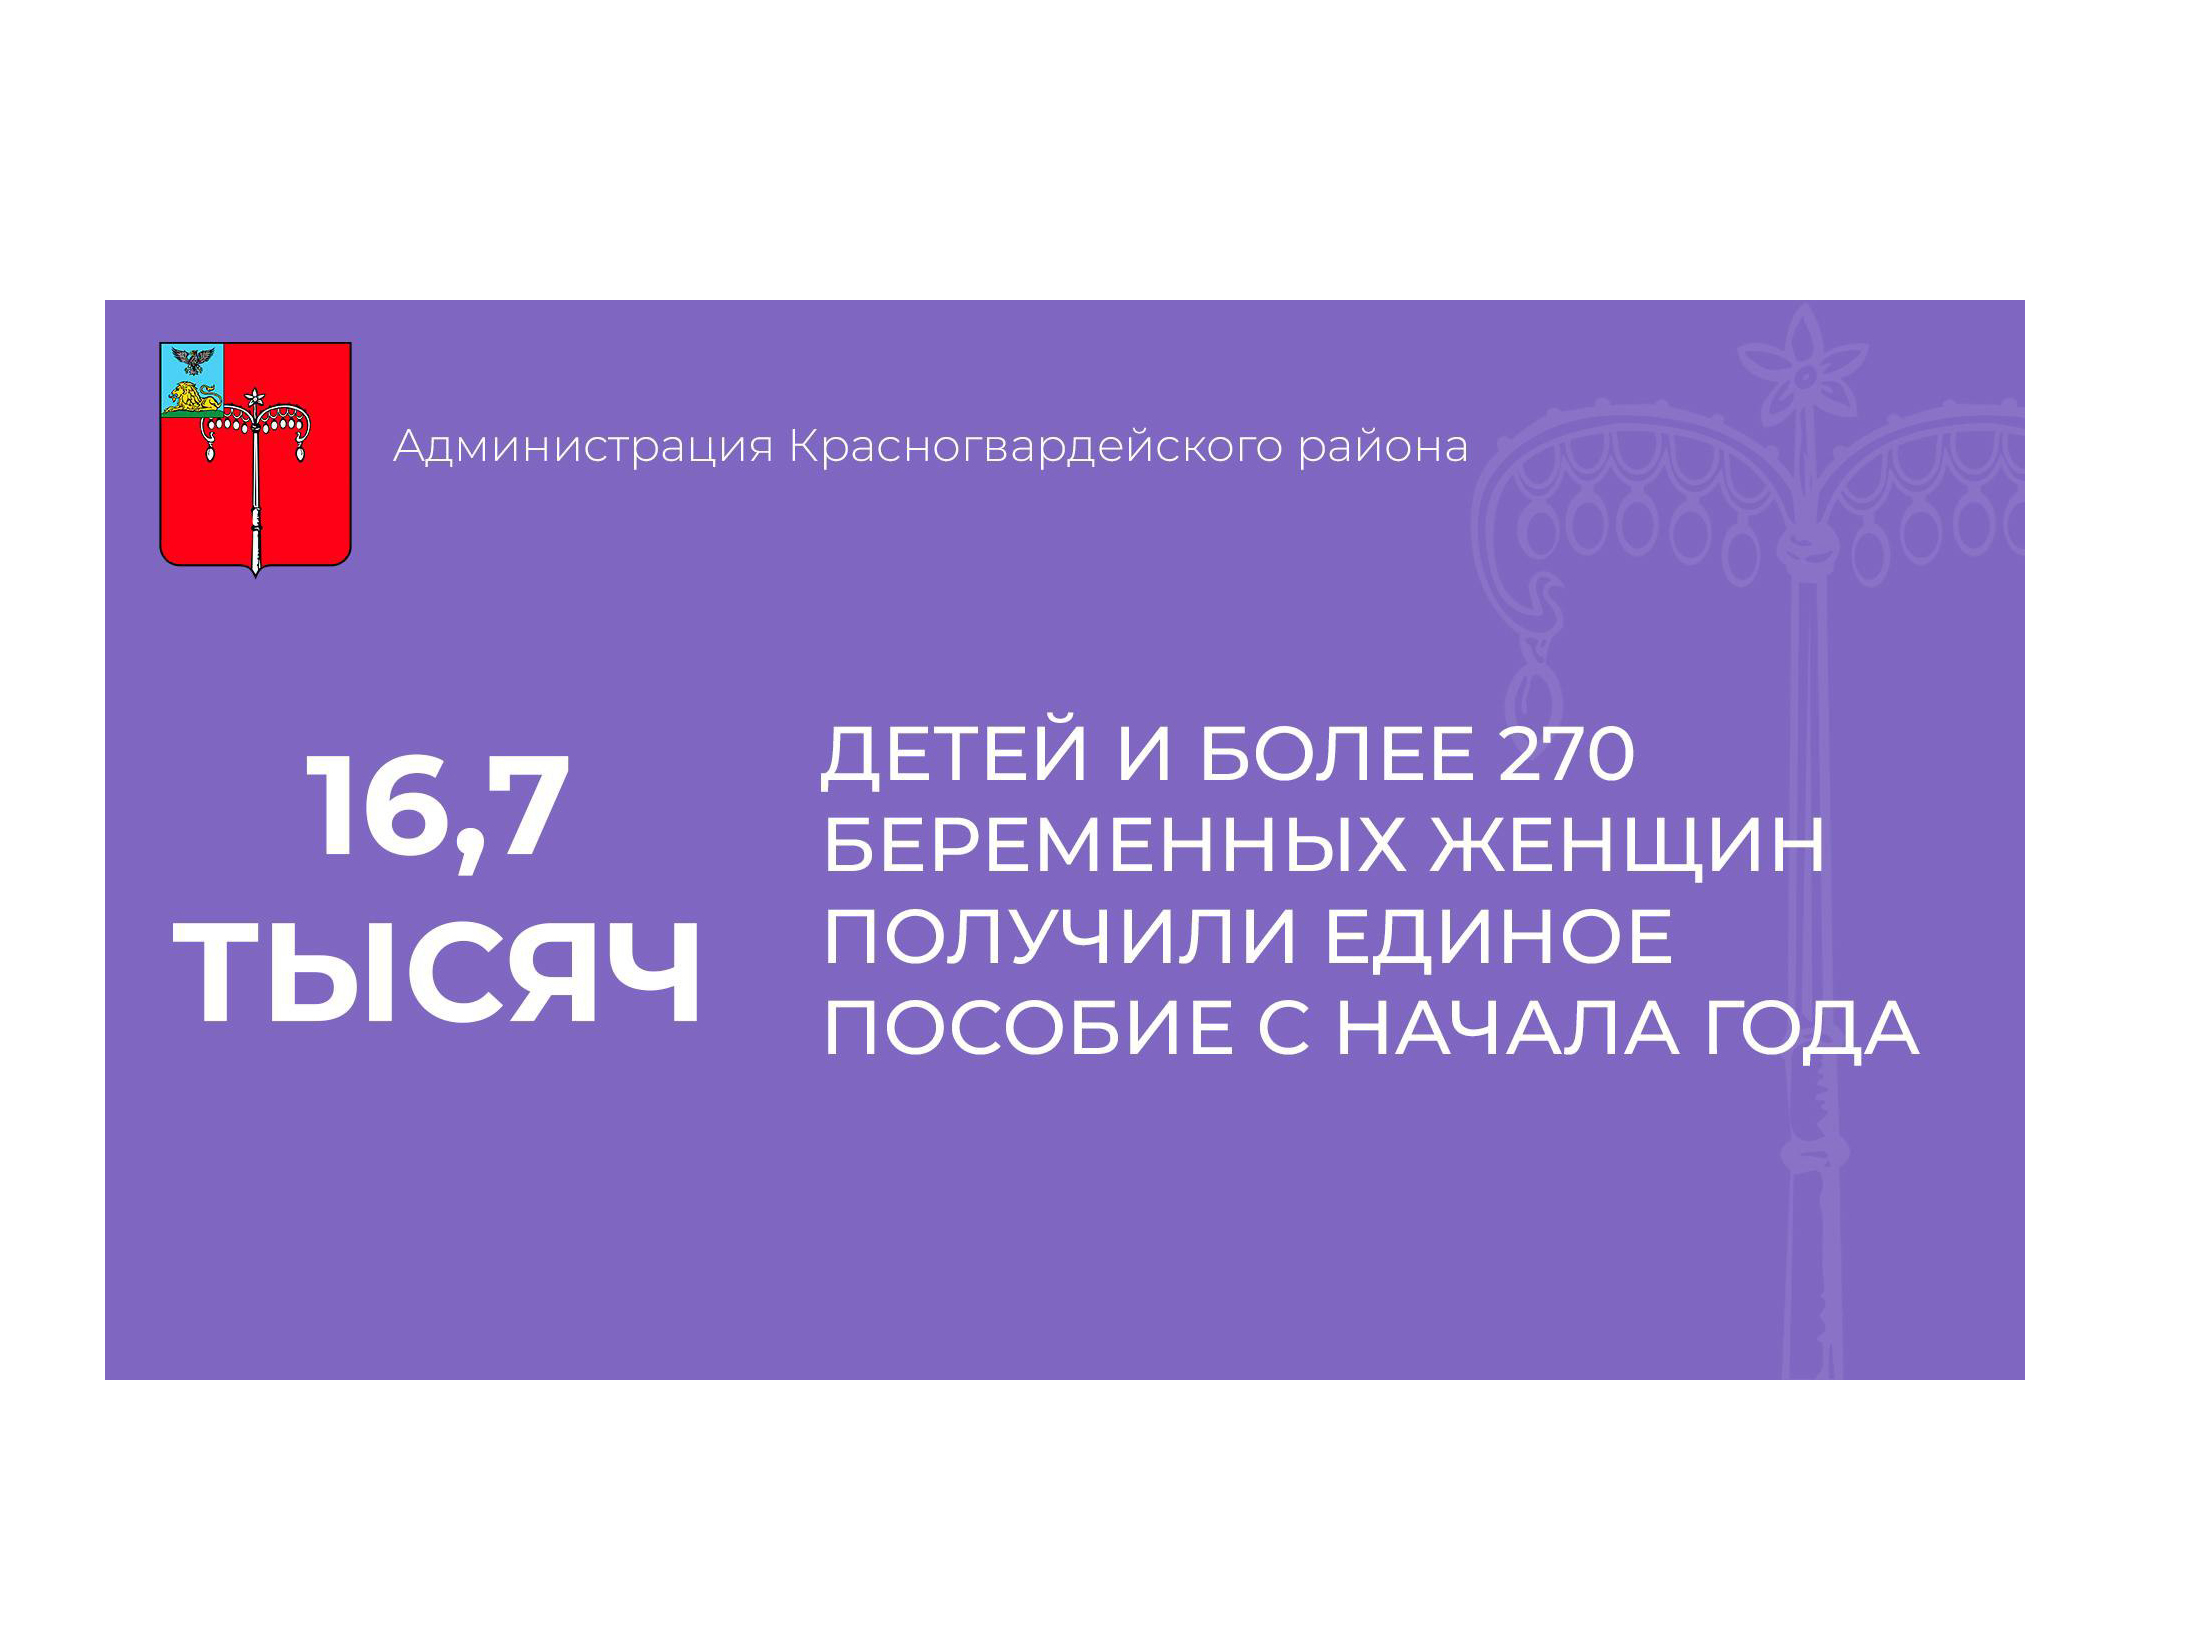 Отделение СФР по Белгородской области назначило единое пособие на 16,7 тыс. детей и более 270 беременным женщин с начала года.